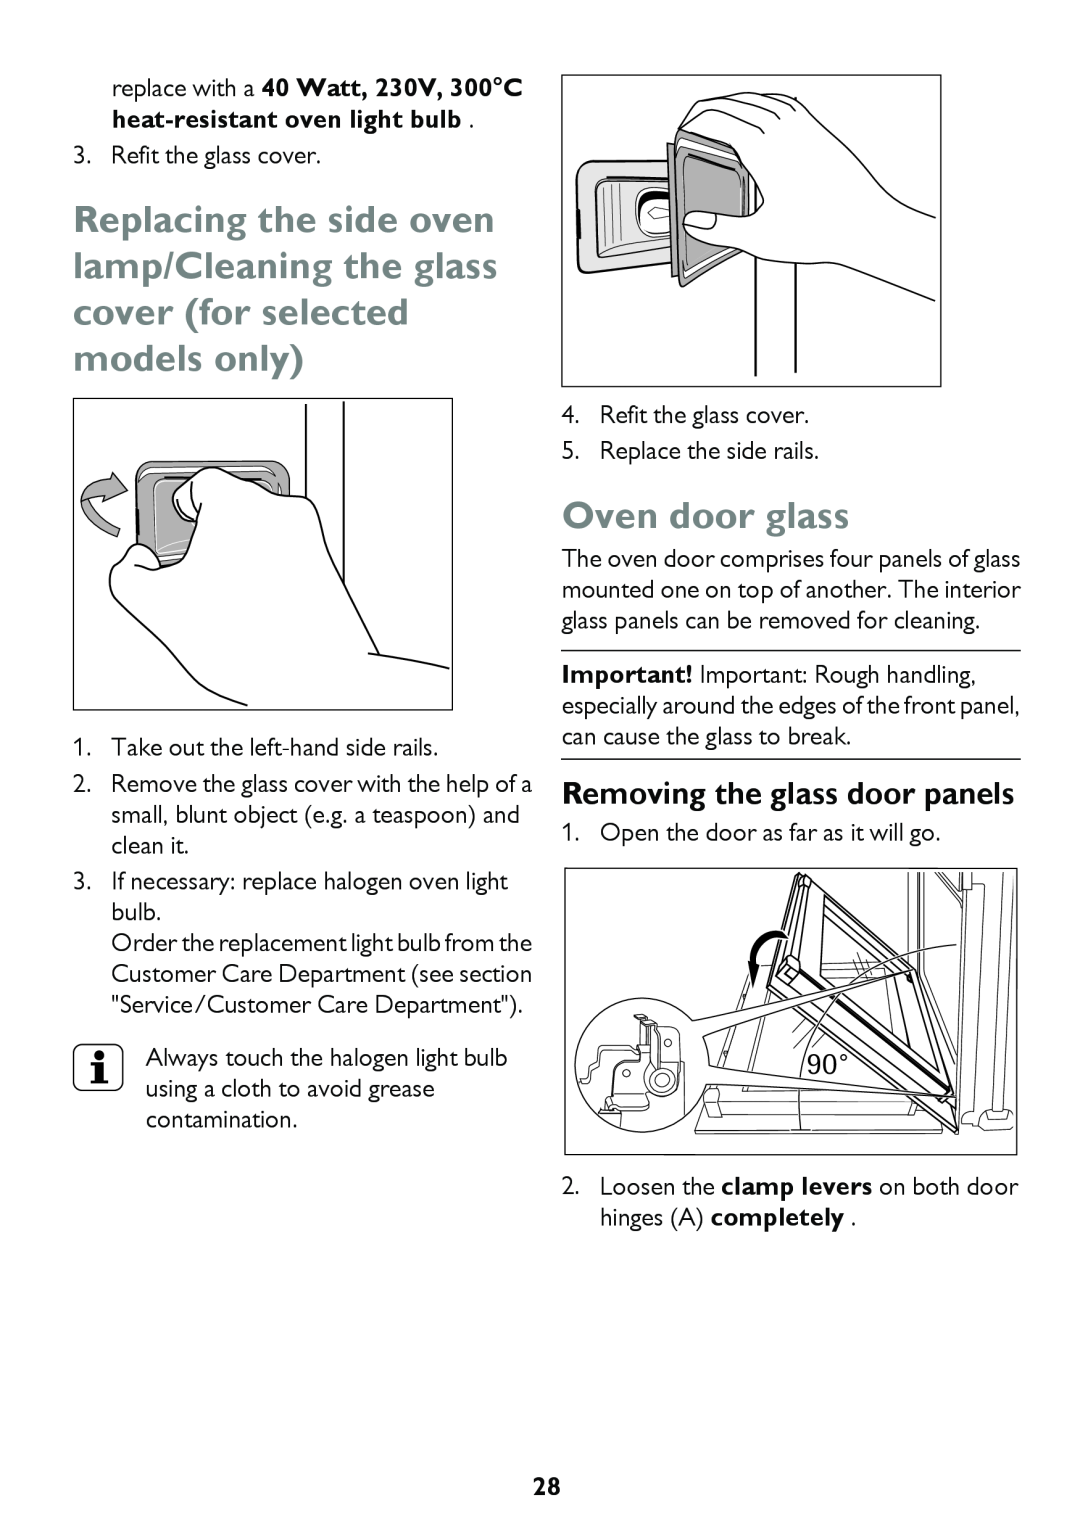 John Lewis JLBIDO913 instruction manual Oven door glass, Removing the glass door panels 